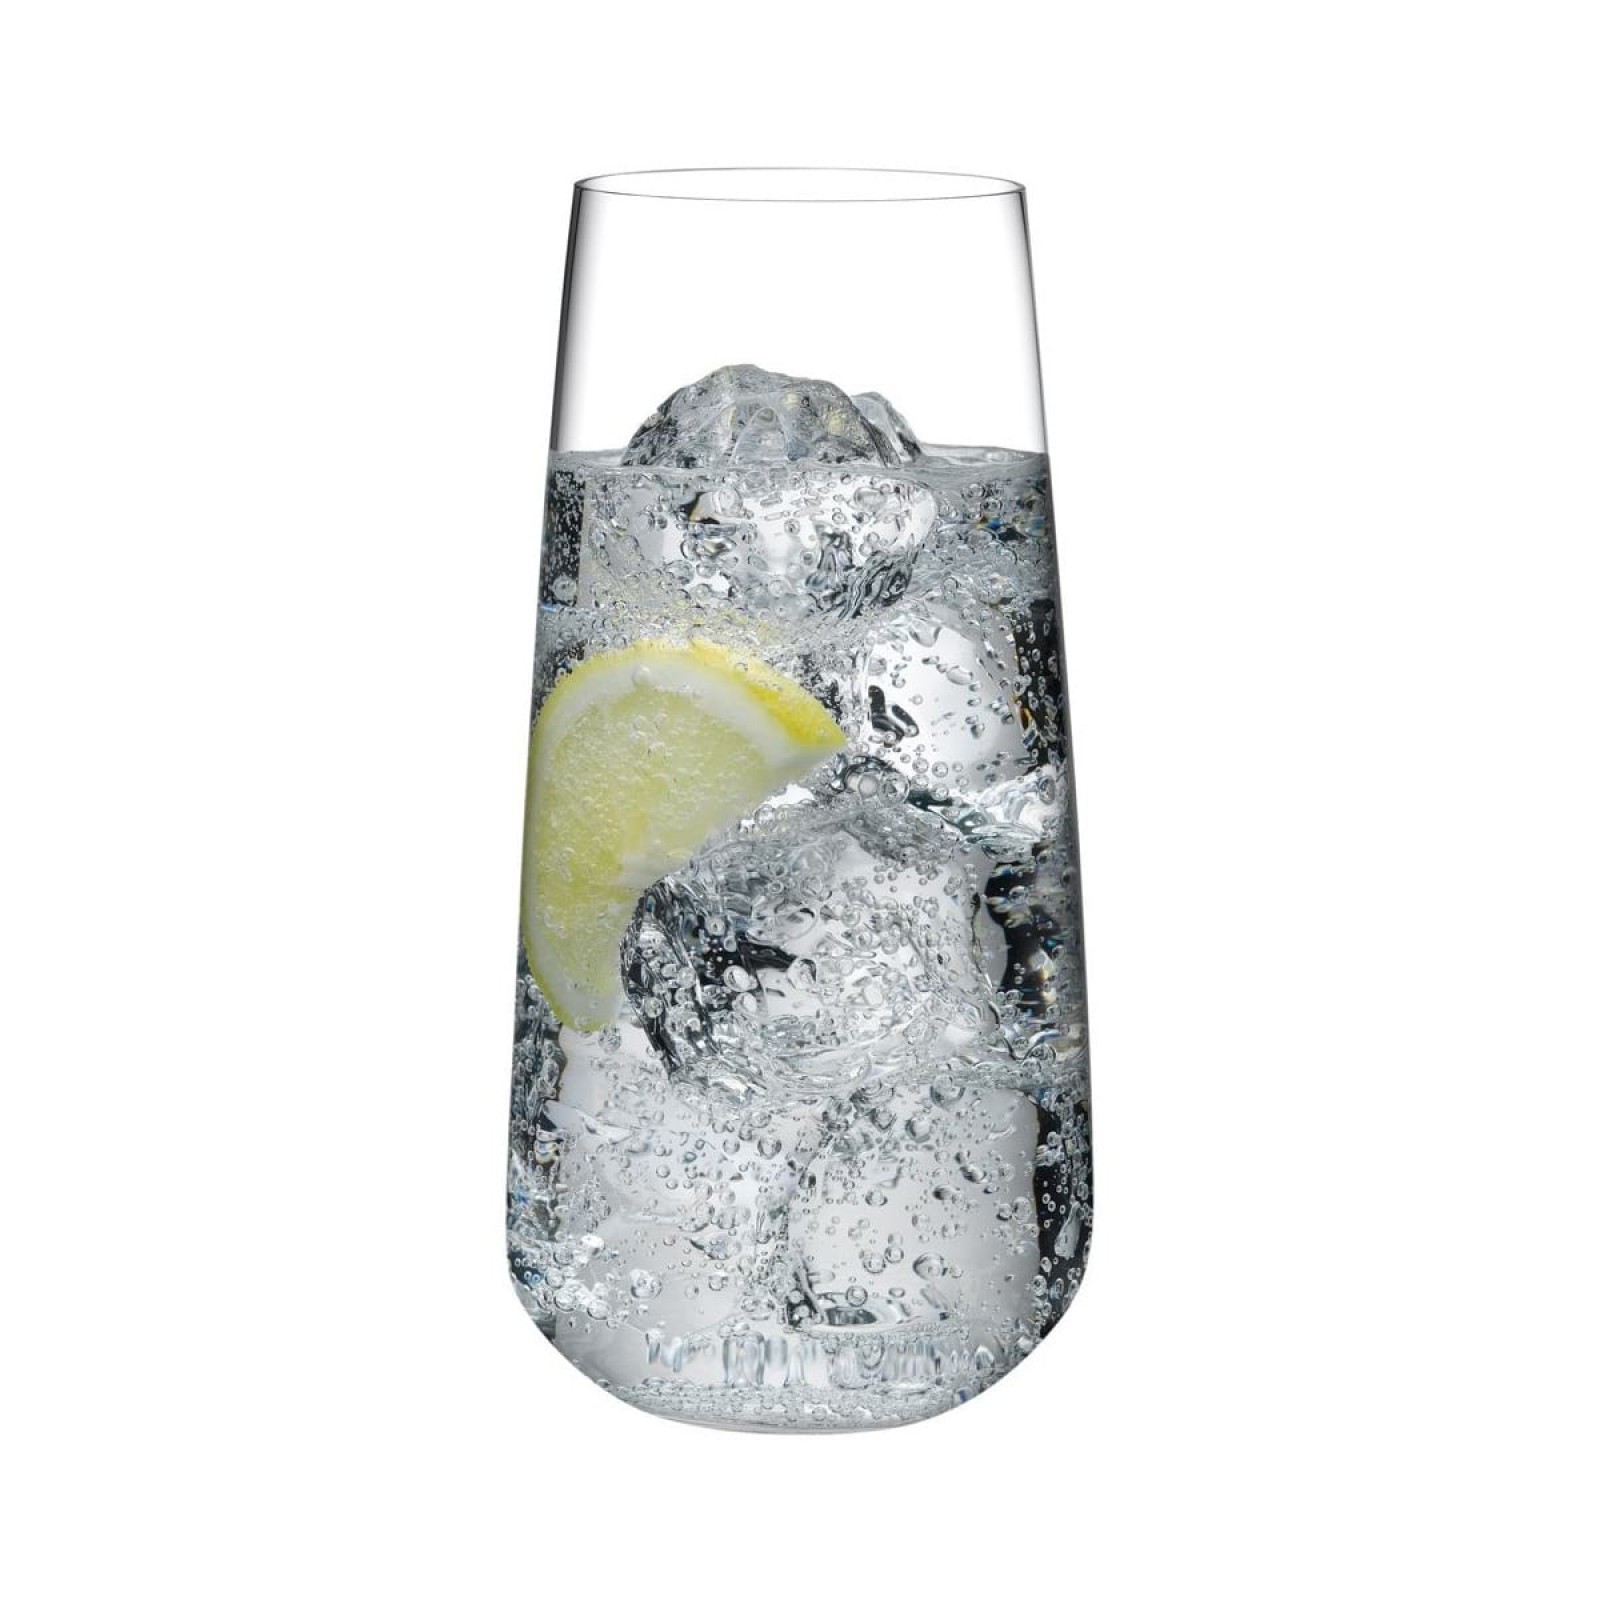 Ψηλά Ποτήρια Mirage 480 ml. (Σετ των 6) - Nude Glass